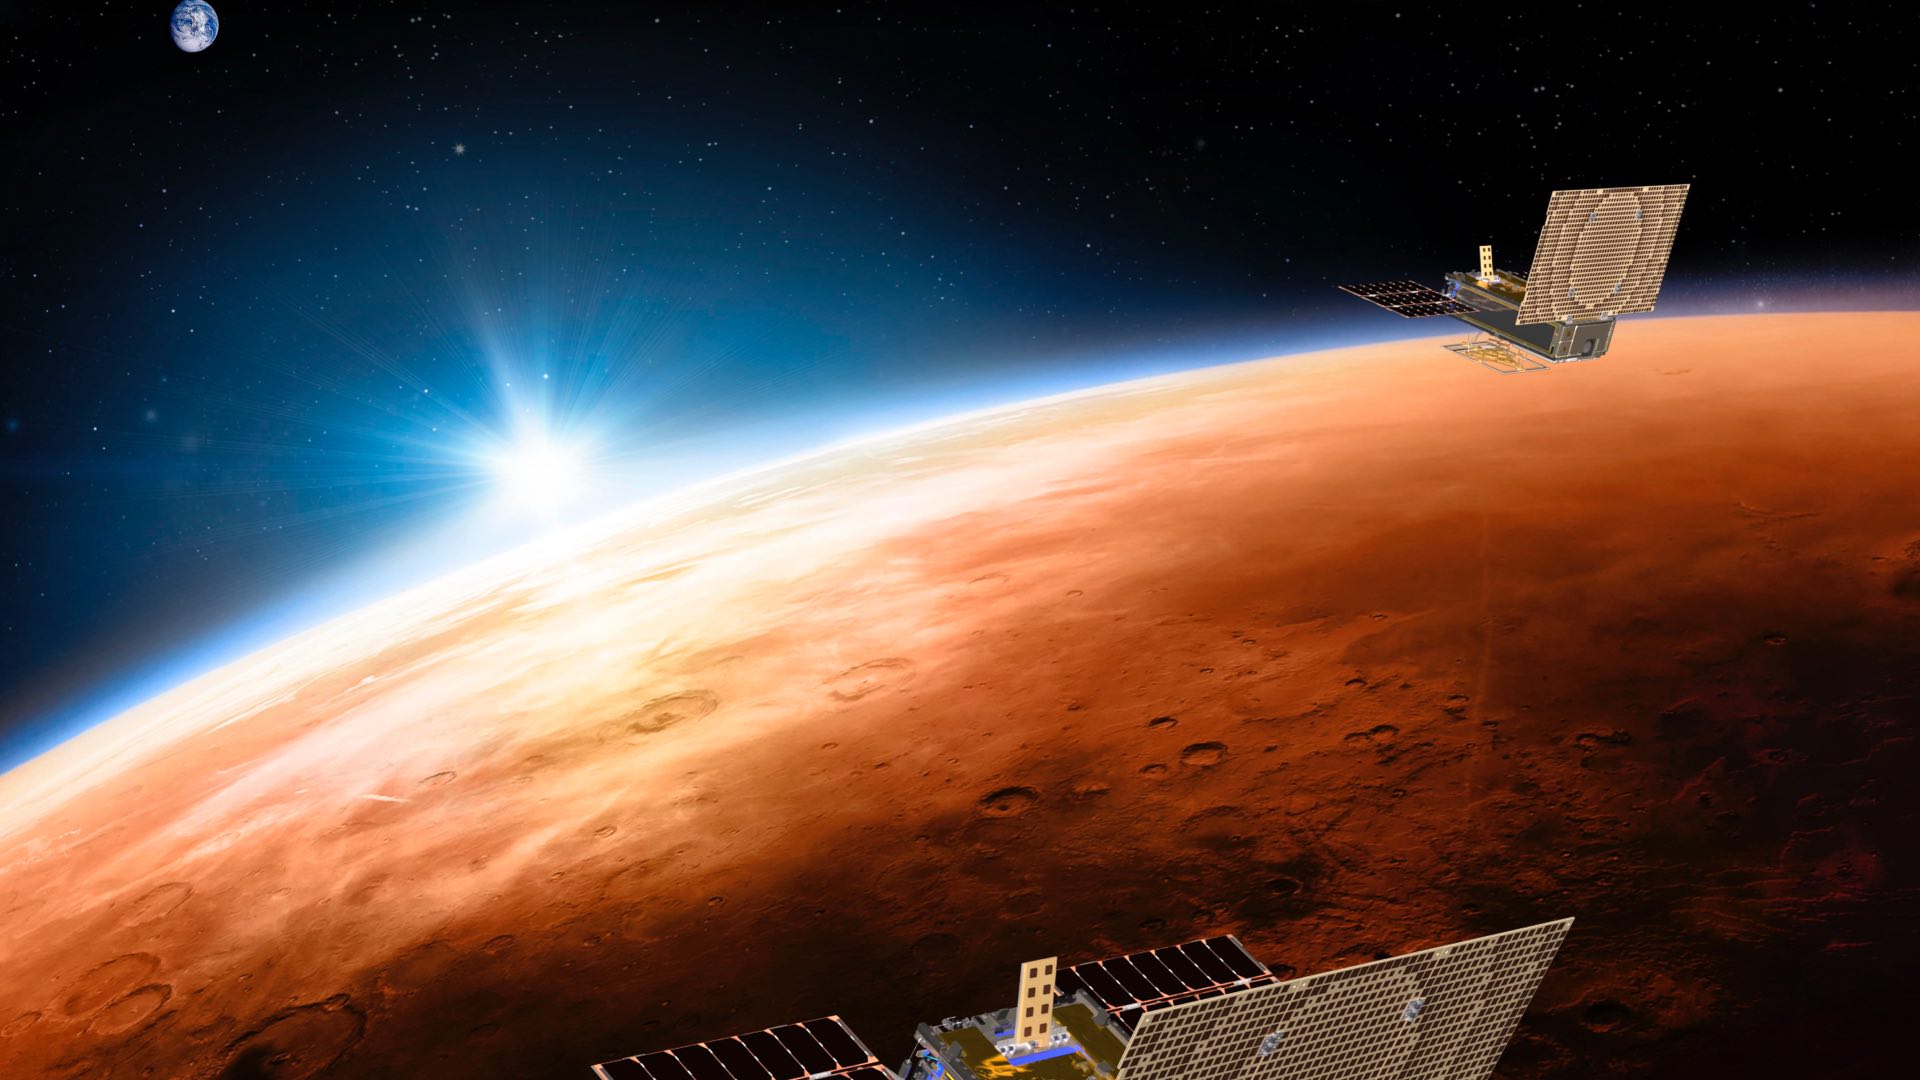 Mars 2020 pondrá a los humanos un paso más cerca de llegar a Marte